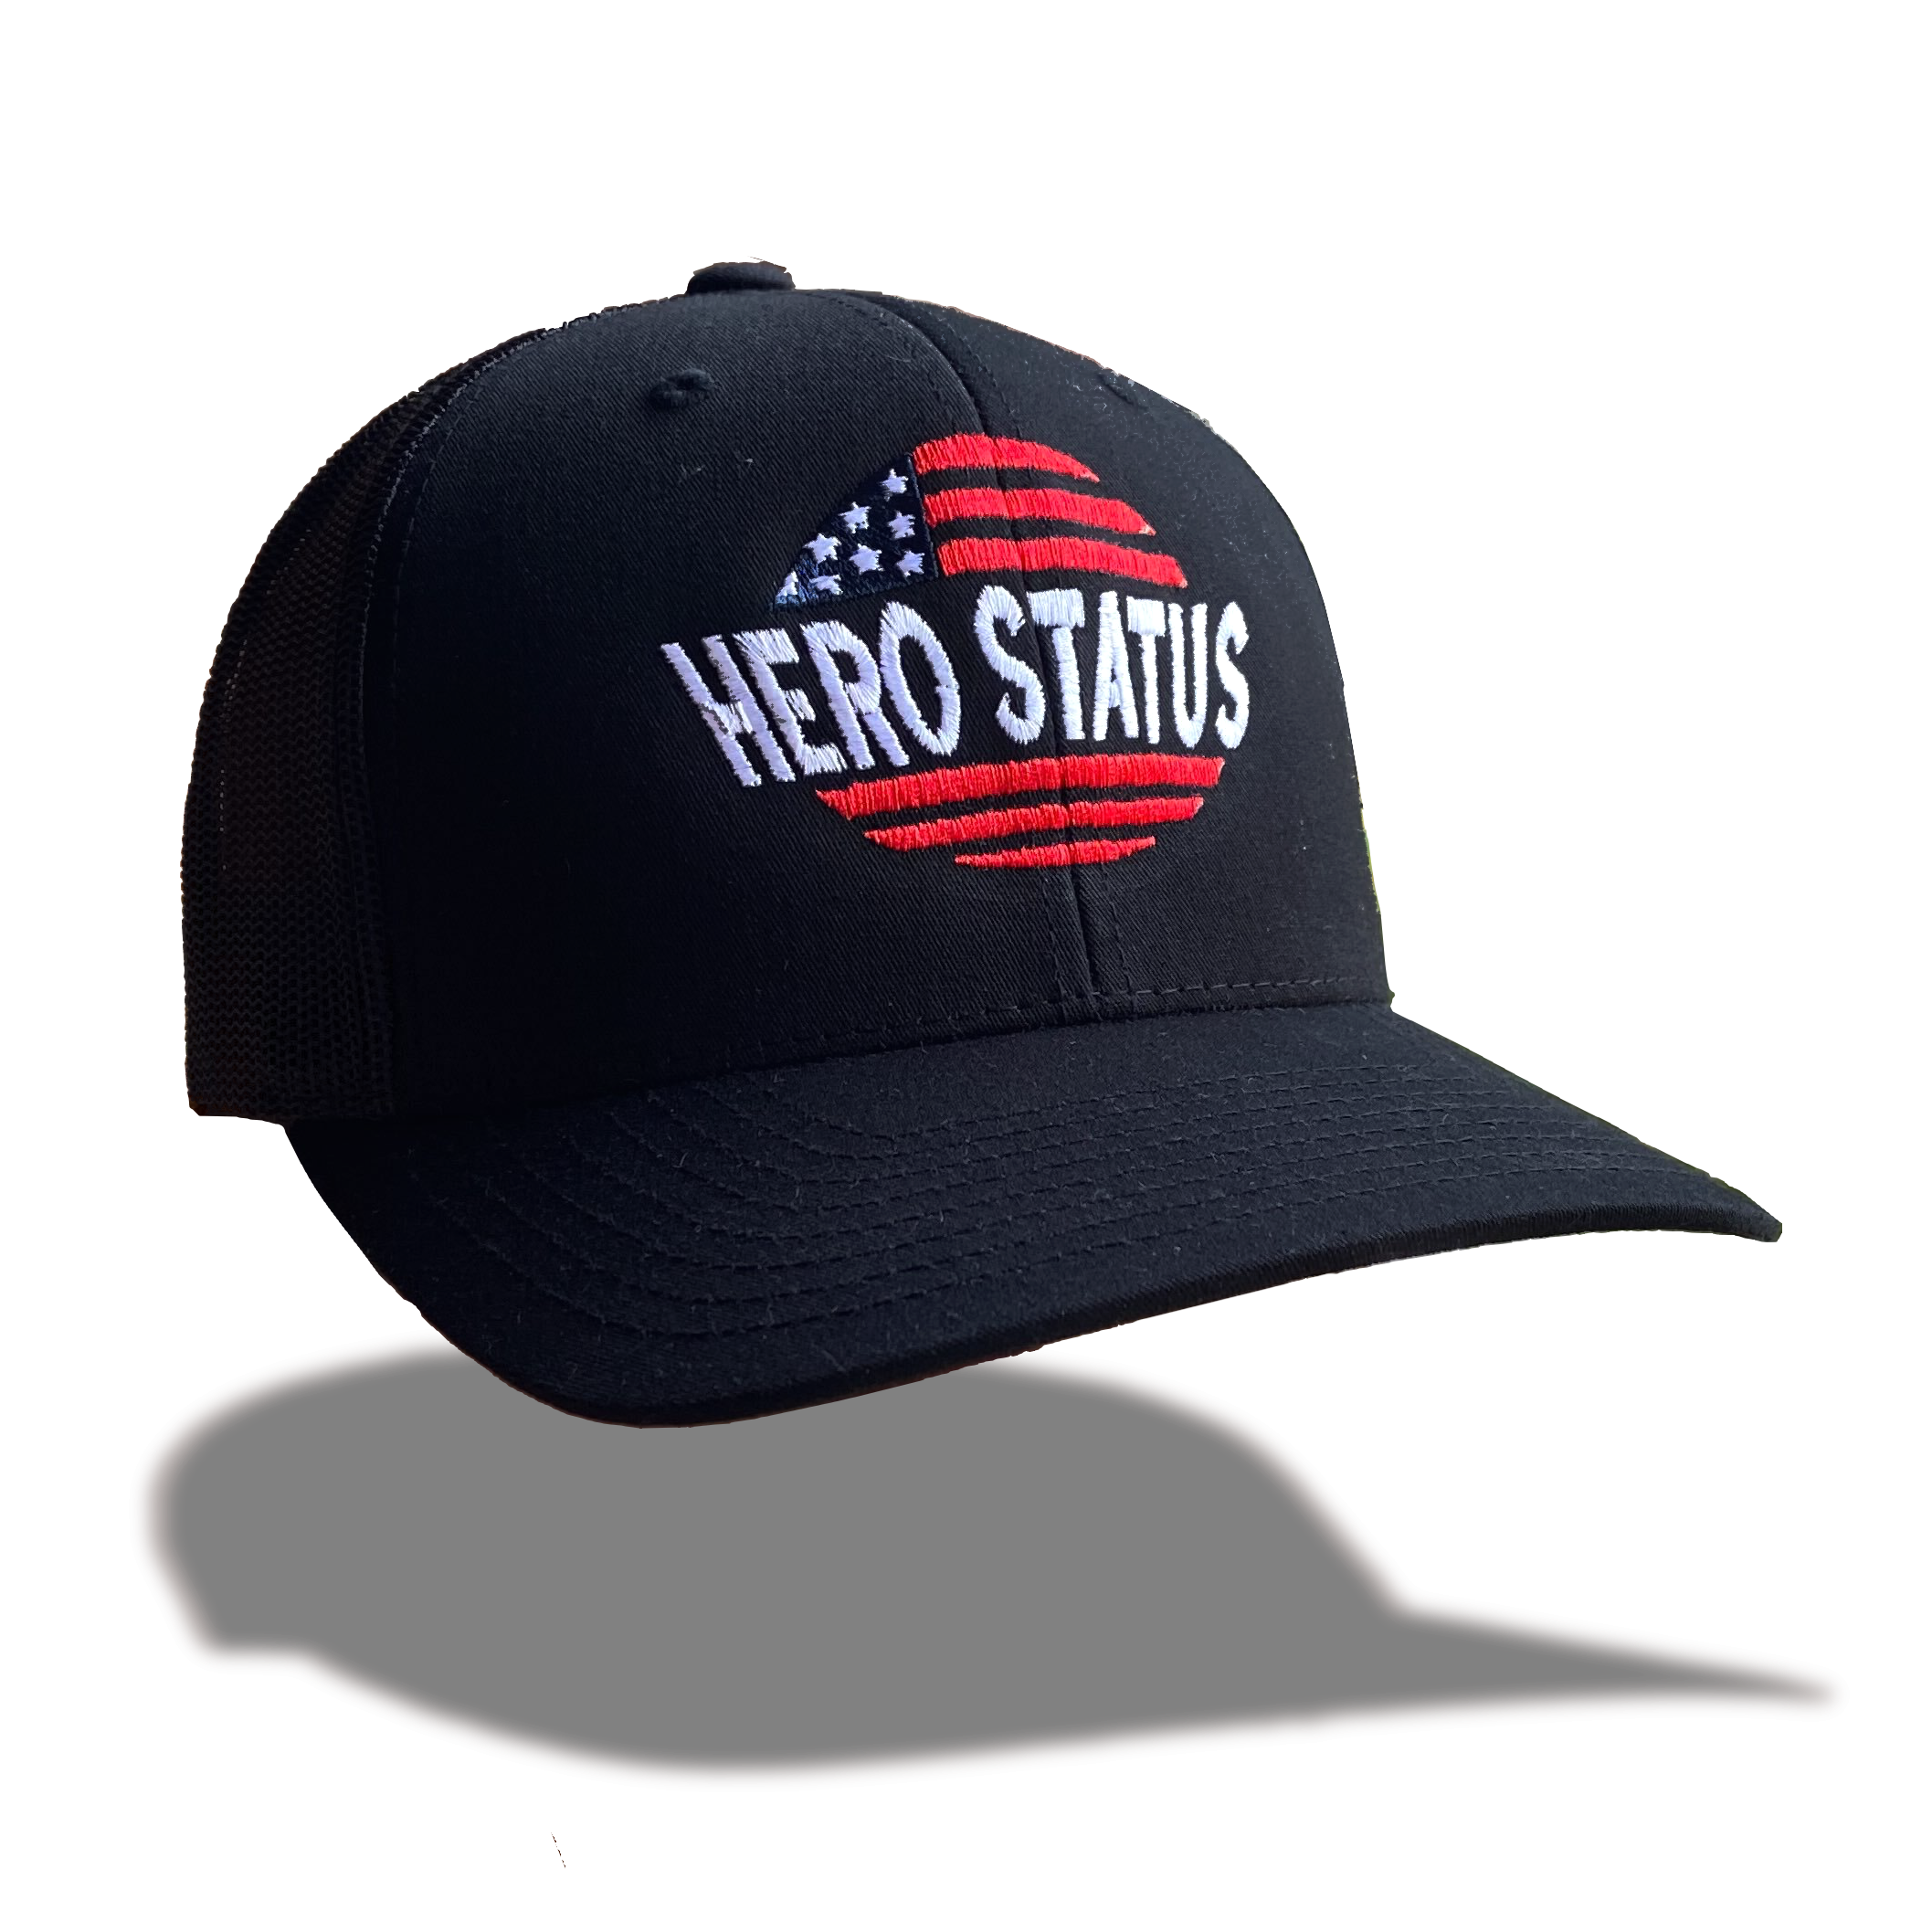 Hero Status Retro Trucker Hat